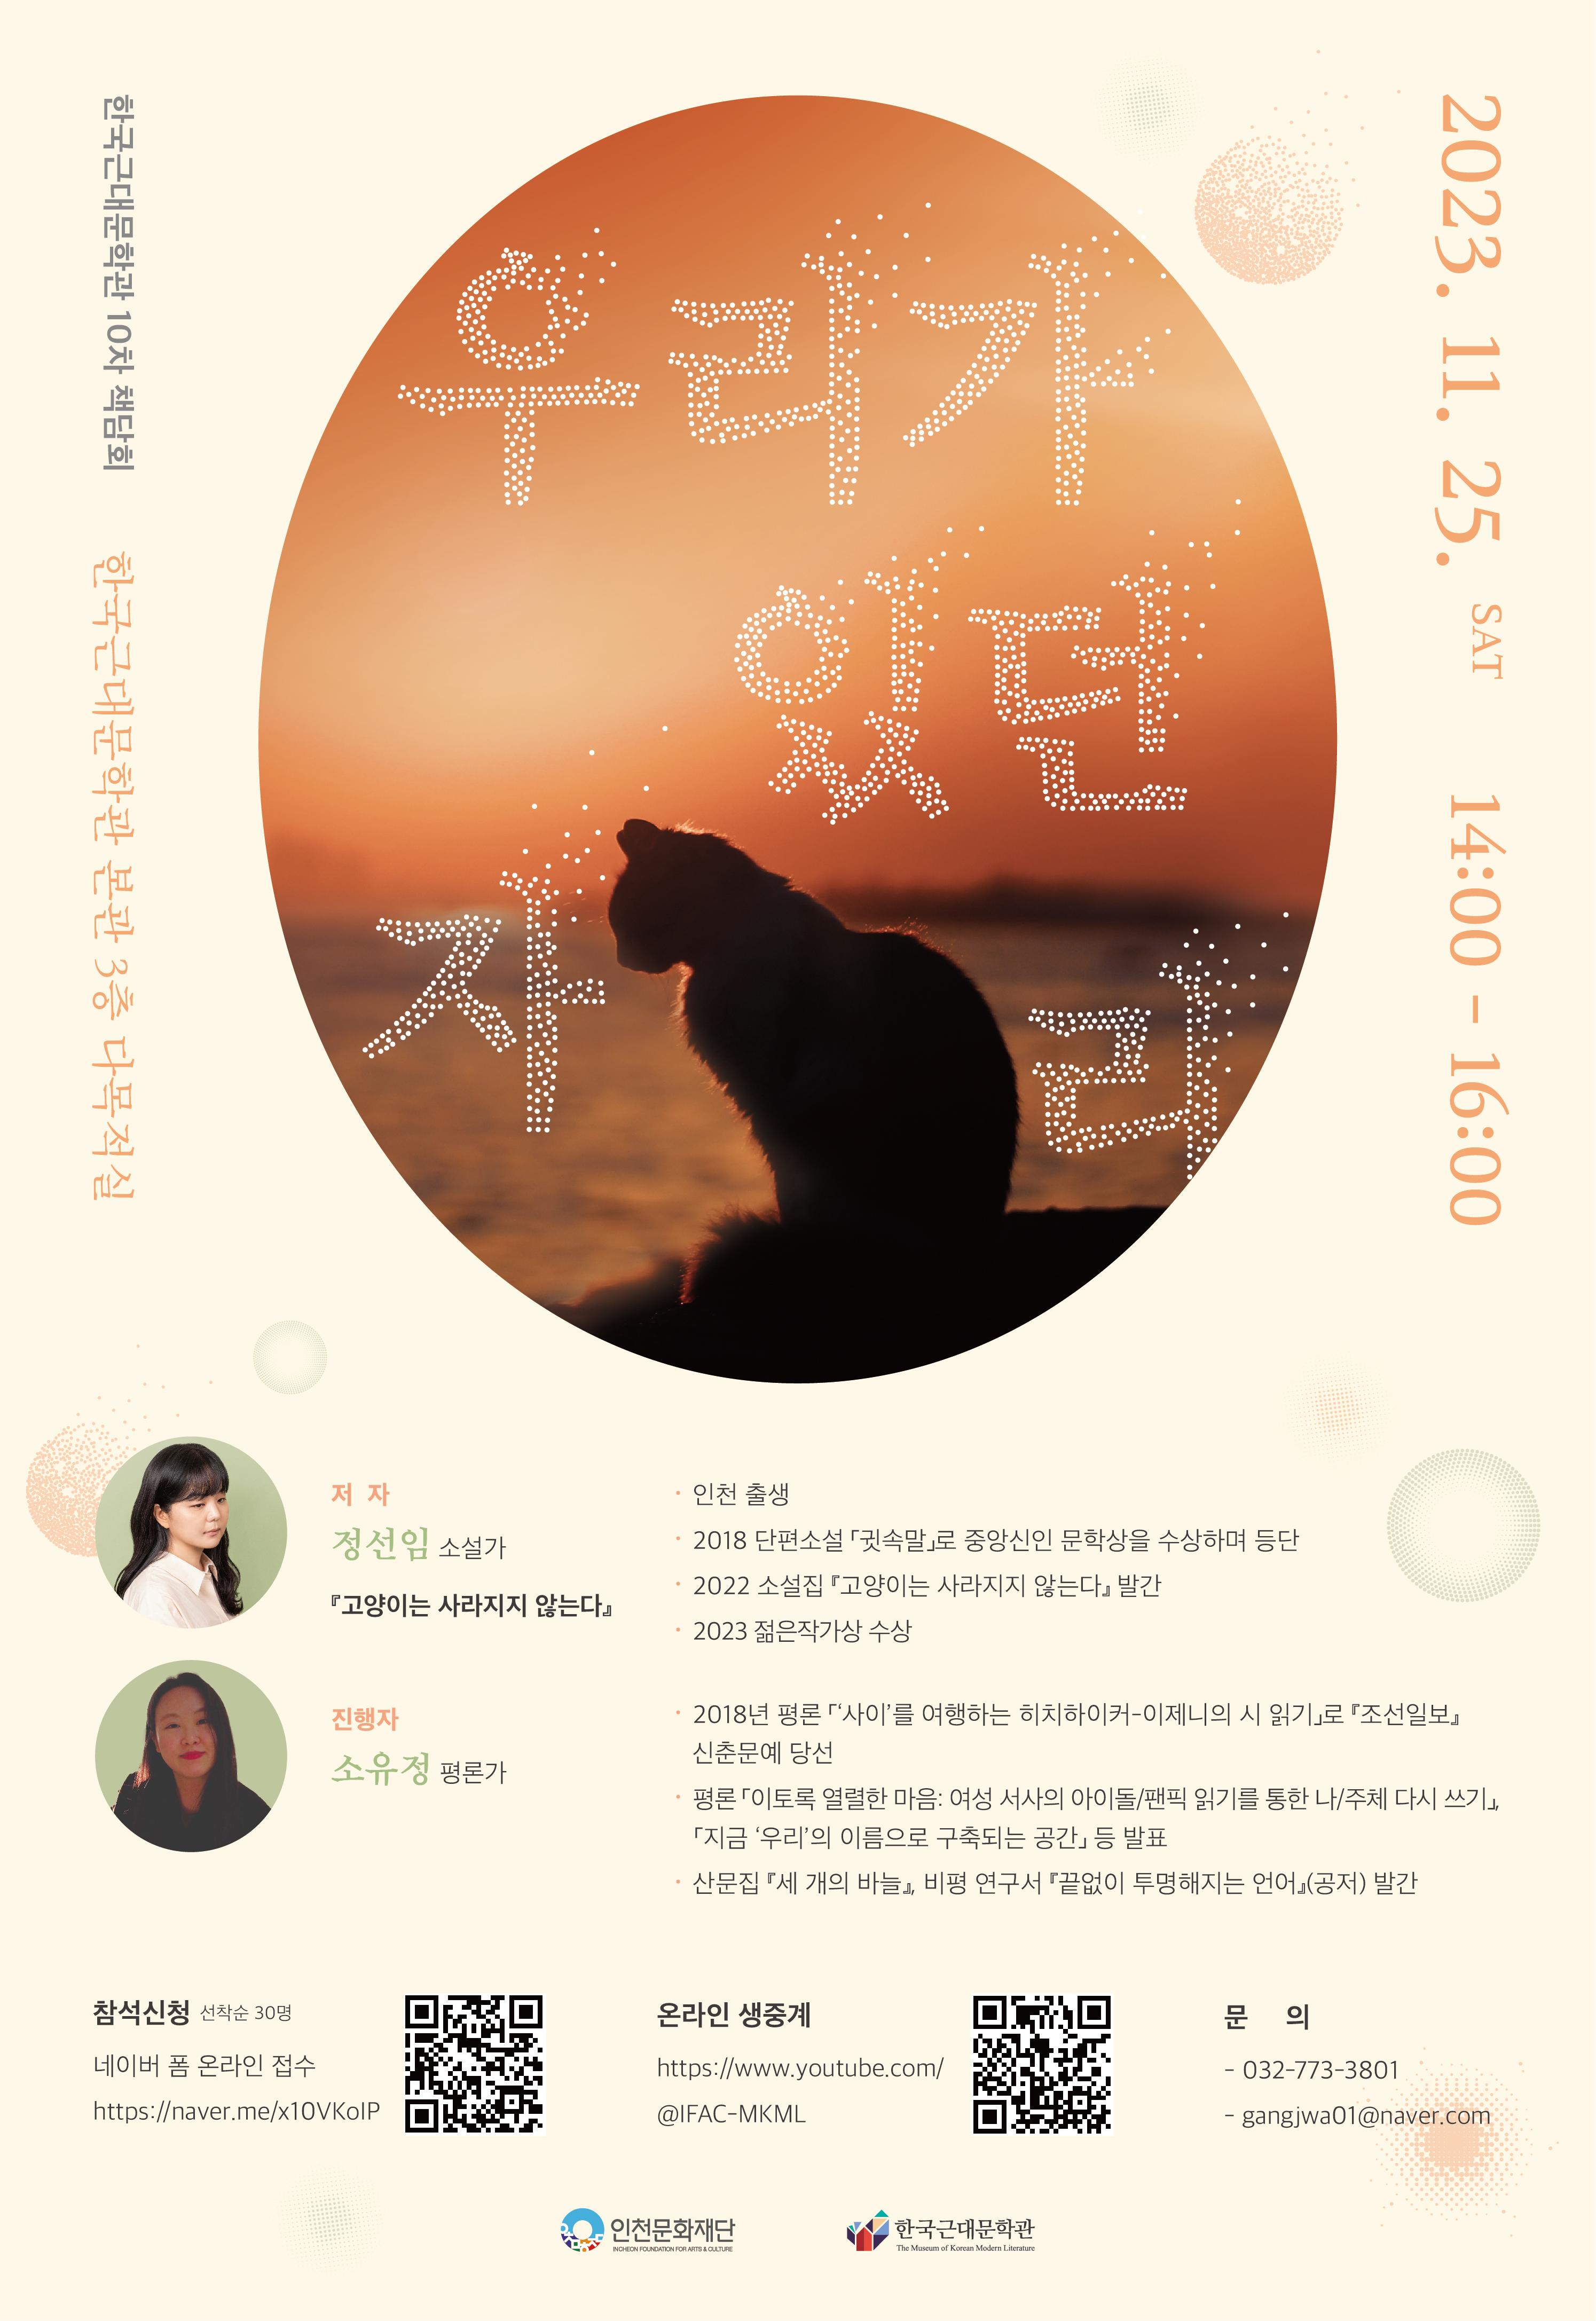 韩国现代文学馆第10届读书讲座《我们在哪里》指南 海报